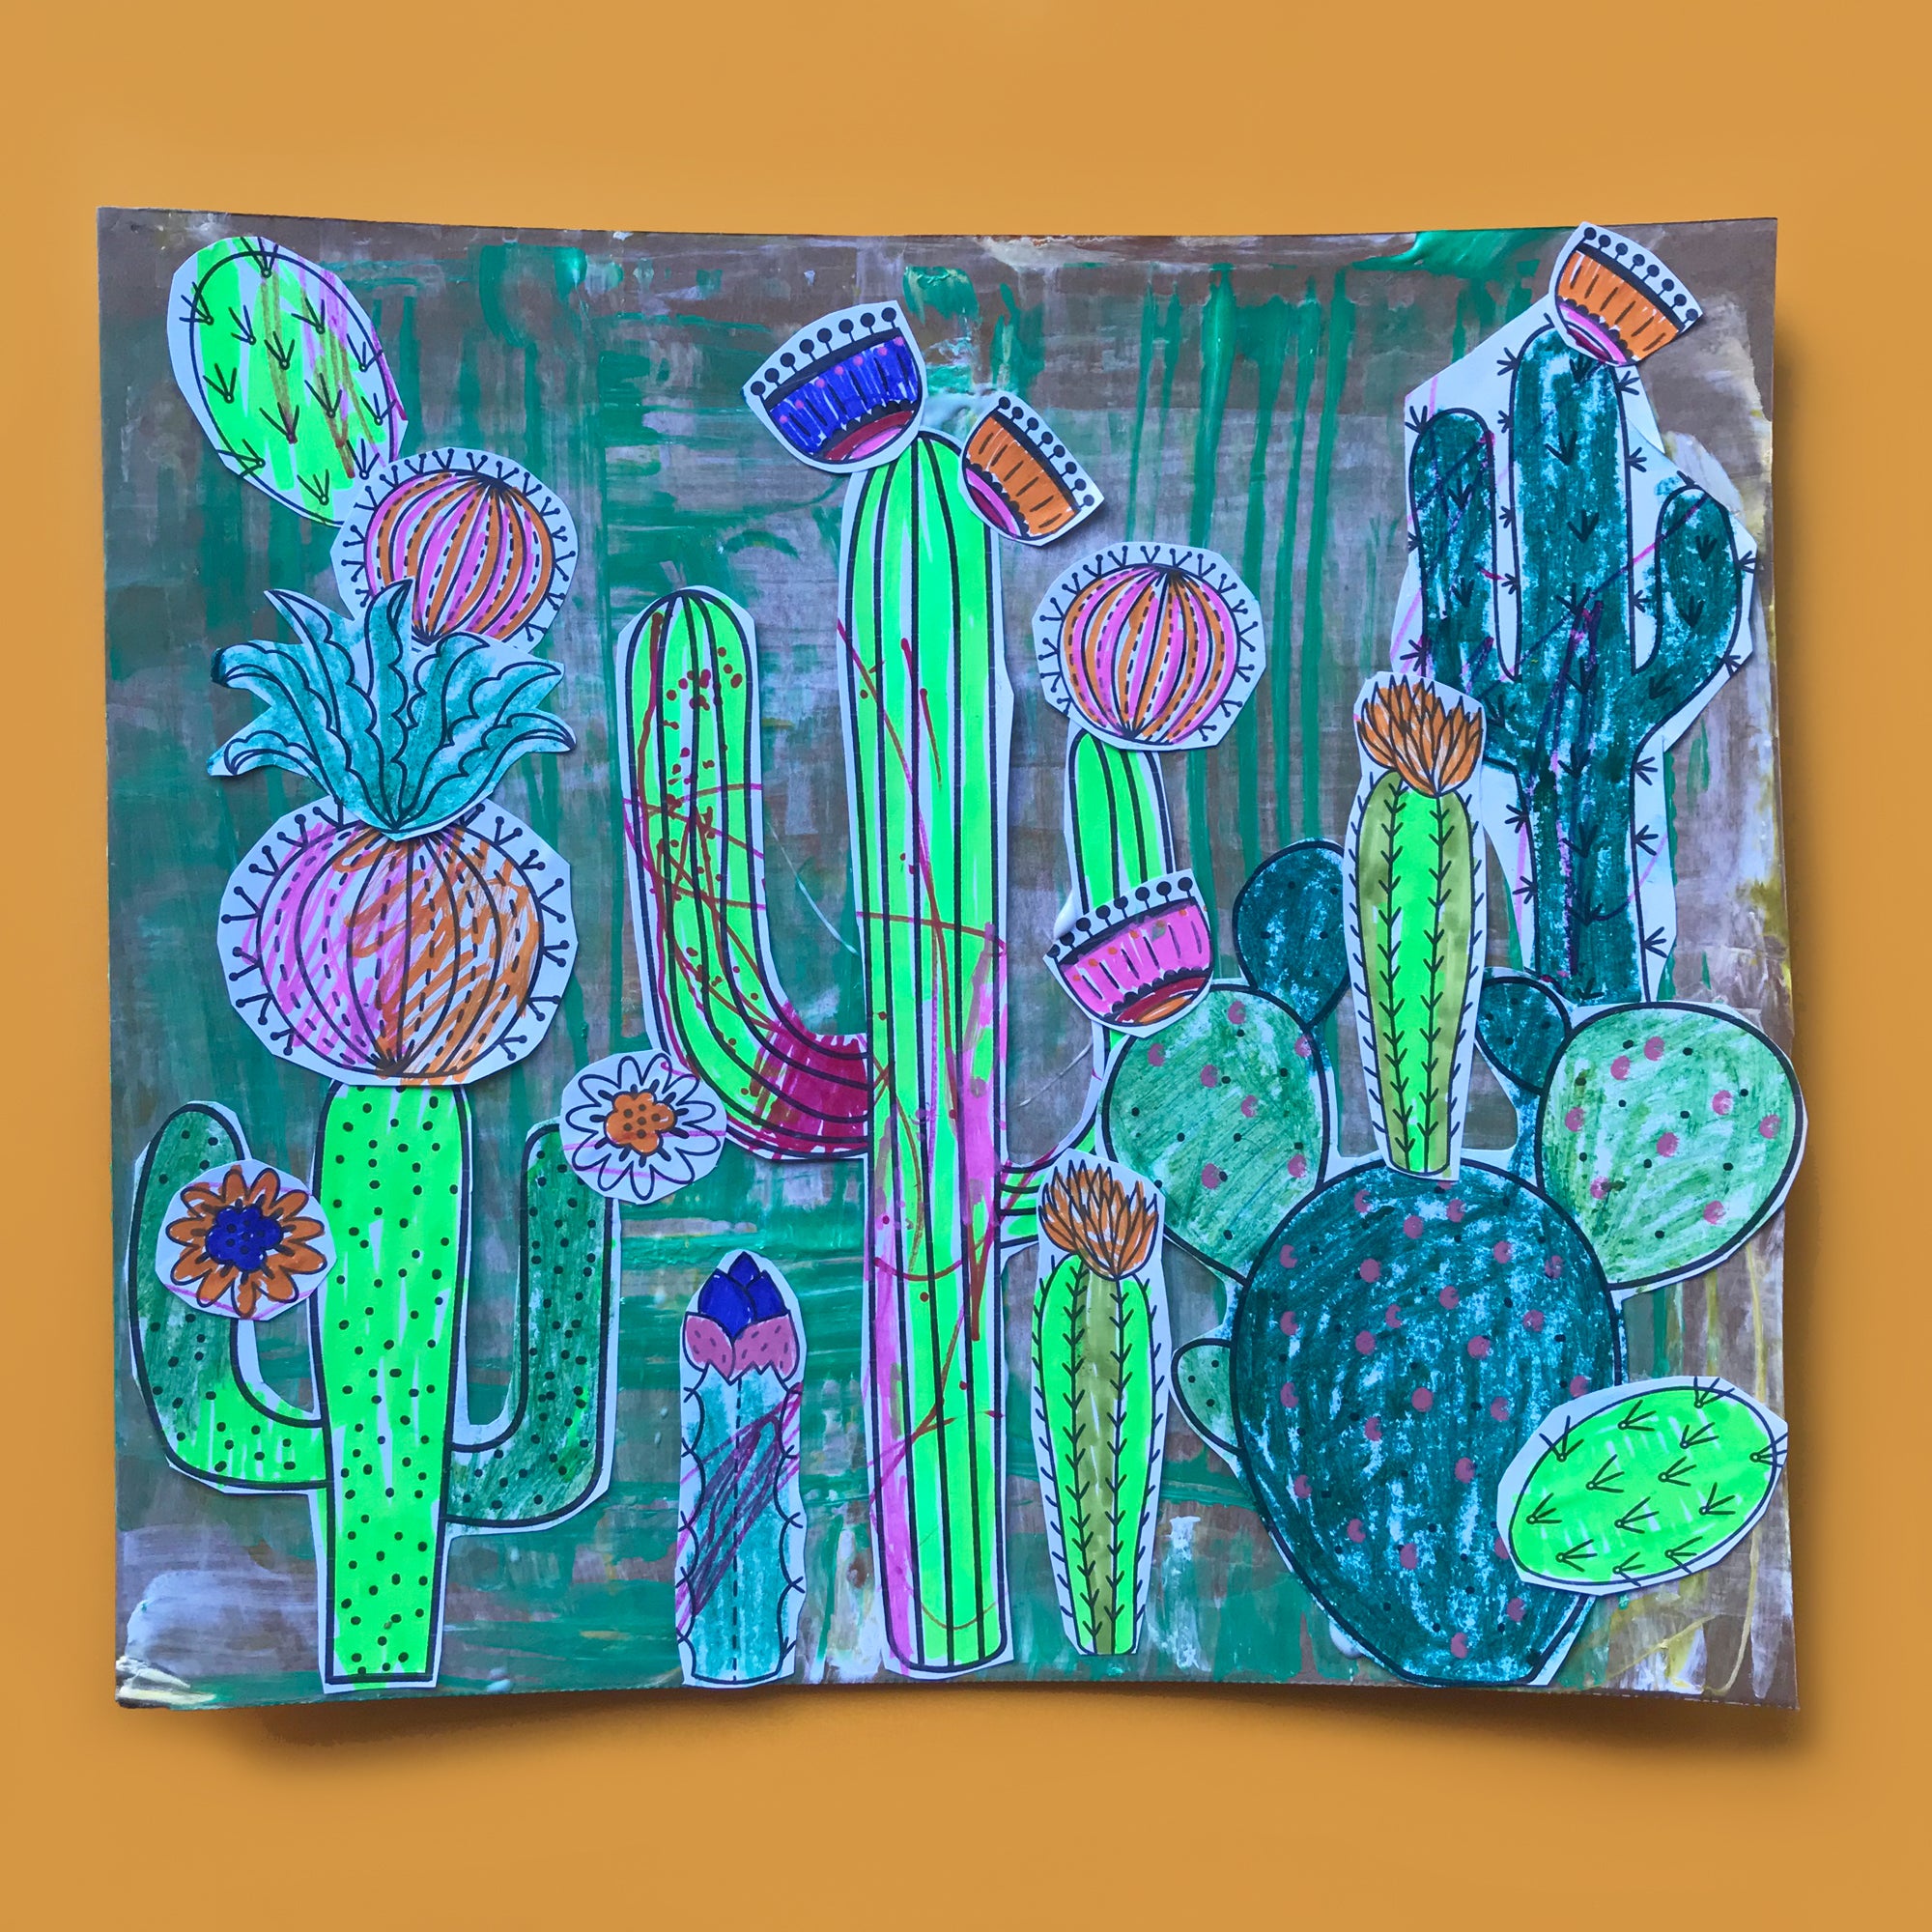 Cacti Garden Collage Printable